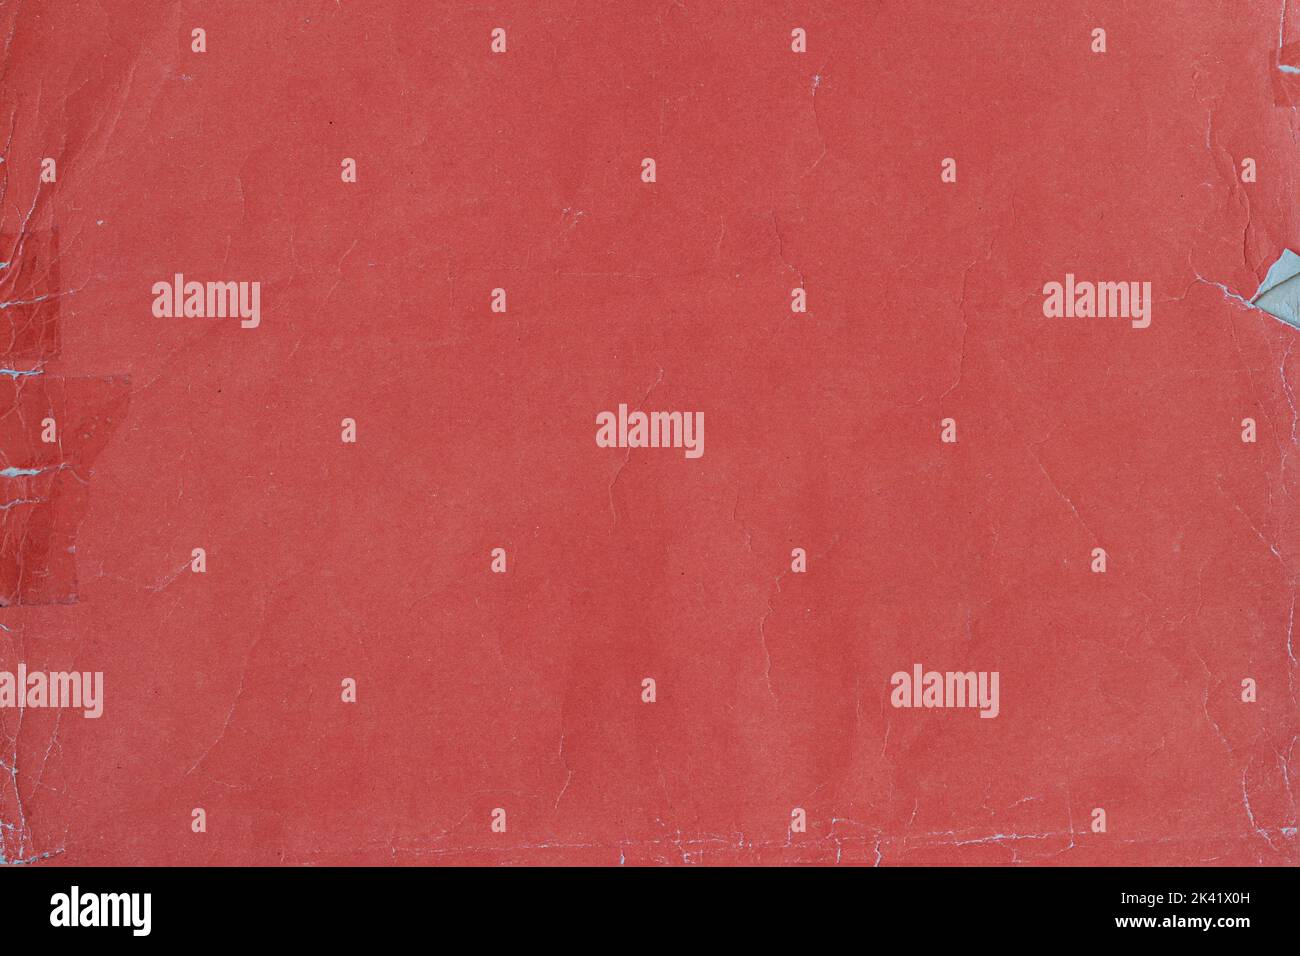 Gealterte und abgenutzte rote Papiertextur, schmutzige Oberfläche mit Flecken, Kratzer. Vintage-Hintergrund Stockfoto